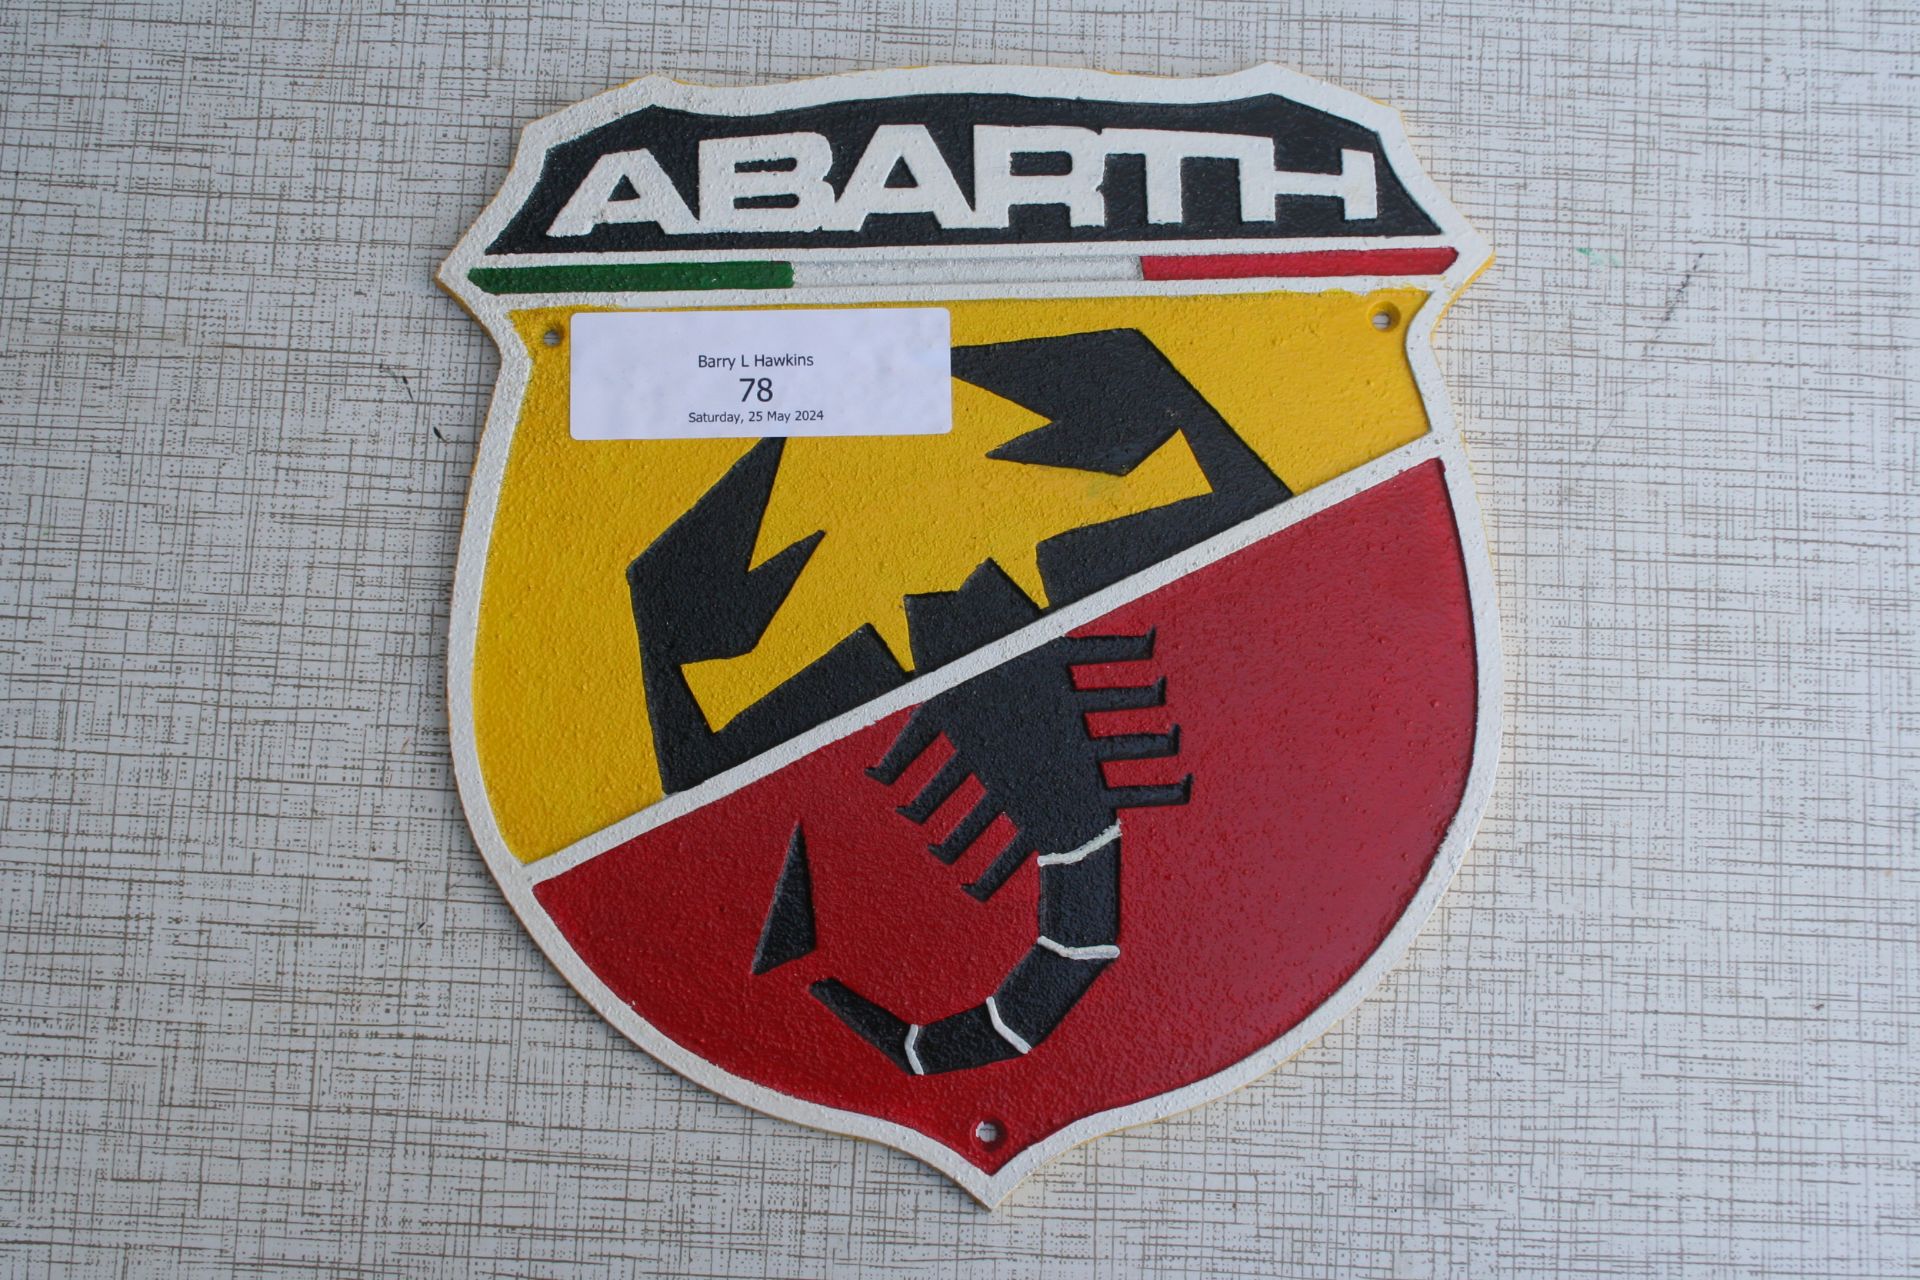 Fiat Abarth plaque